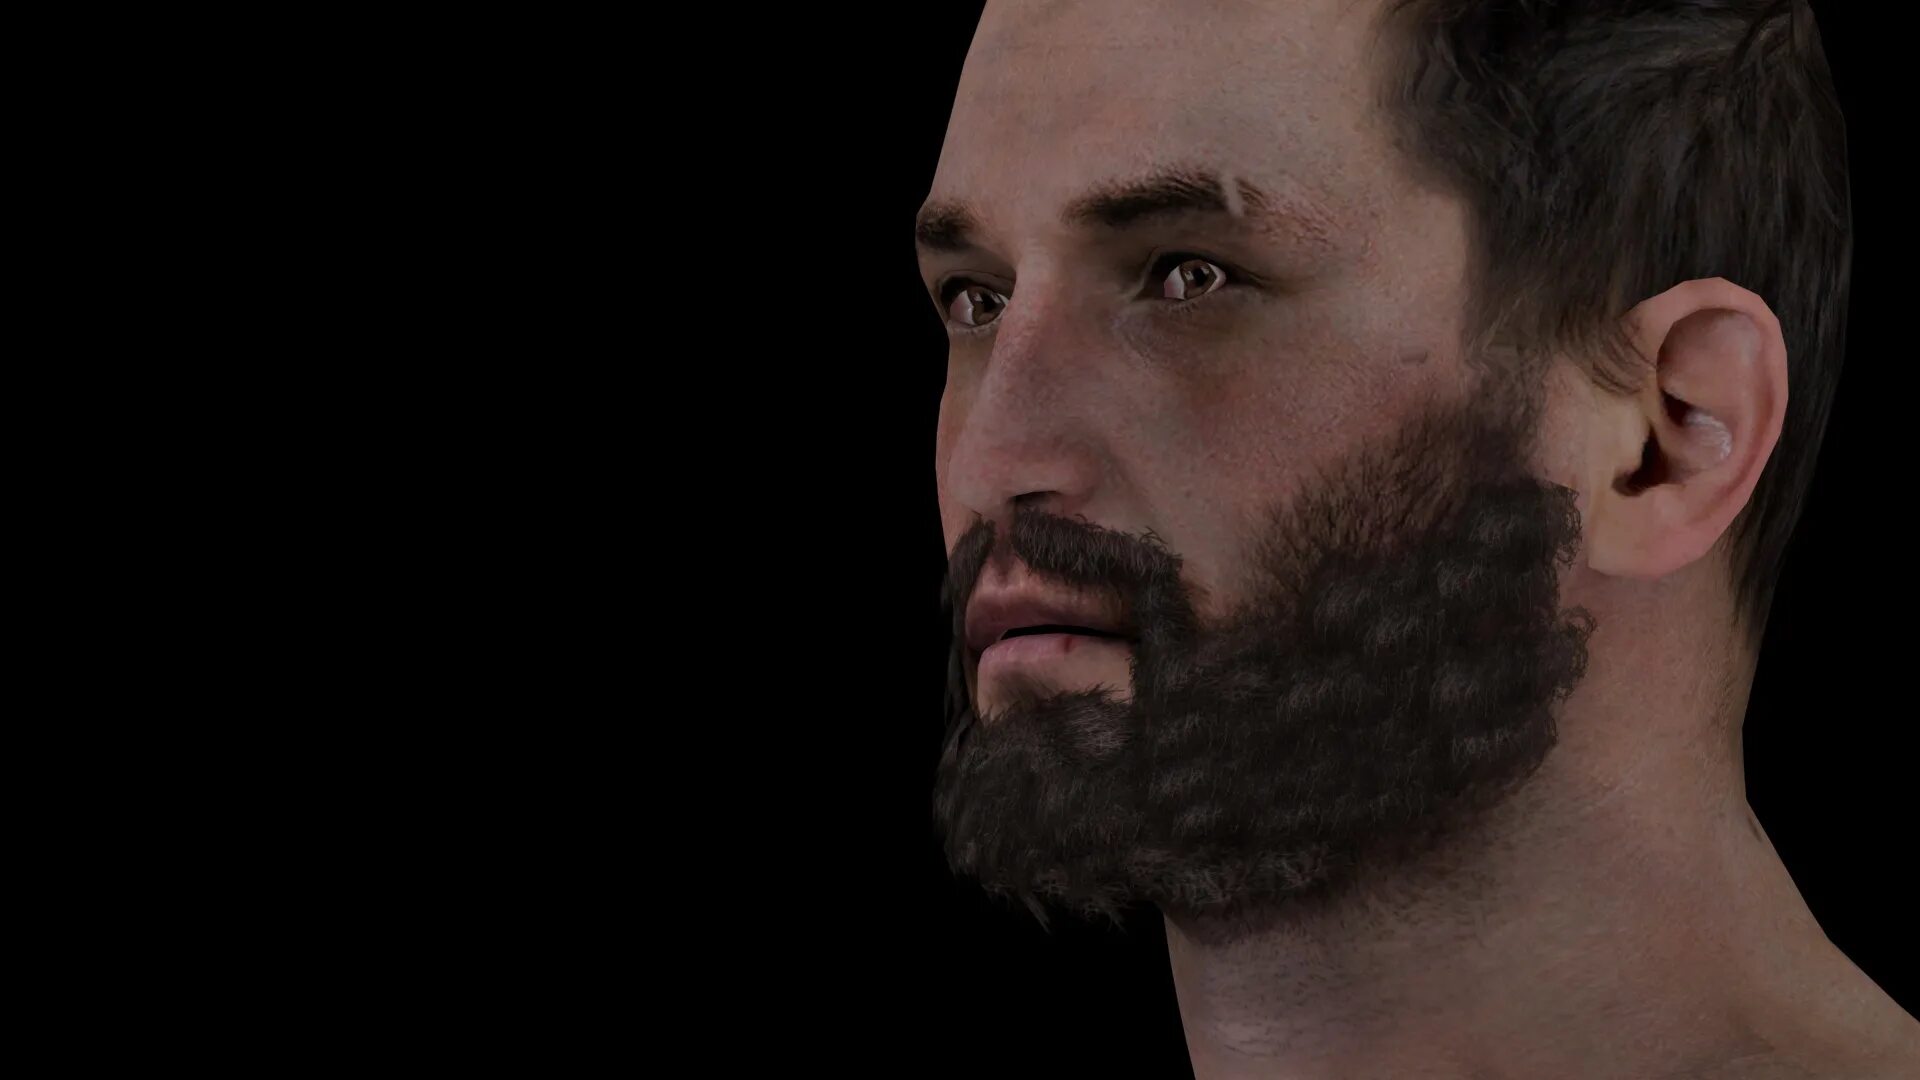 Лица арма 3. Arma 3 борода. Некрасивая борода. 3д модель мужчины с бородой. Камуфляж бороды.